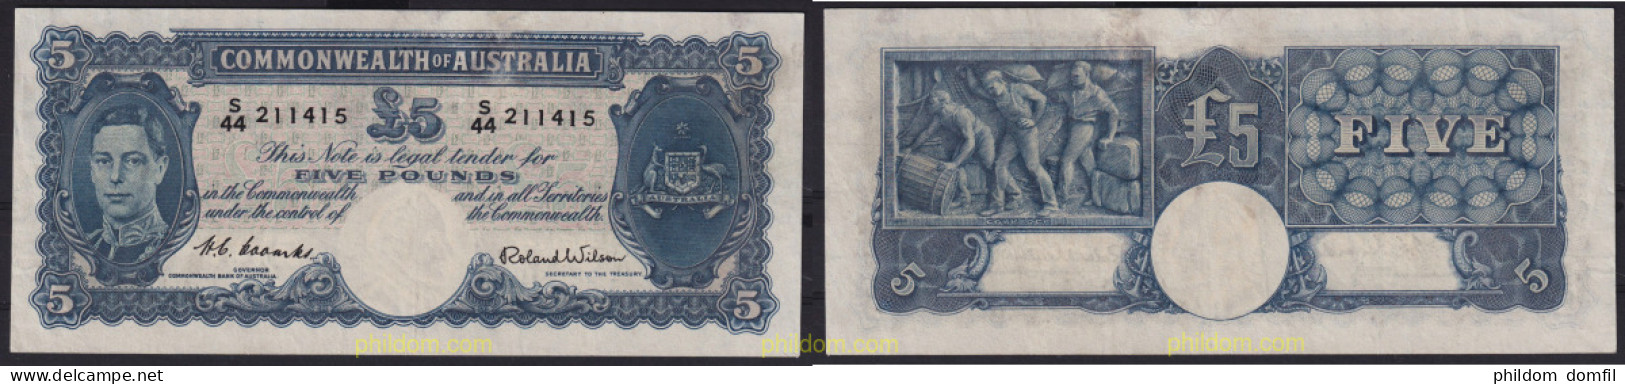 6770 AUSTRALIA 1952 AUSTRALIA 5 POUNDS 1952 - Banque De Nouvelle Galle Du Sud 1817